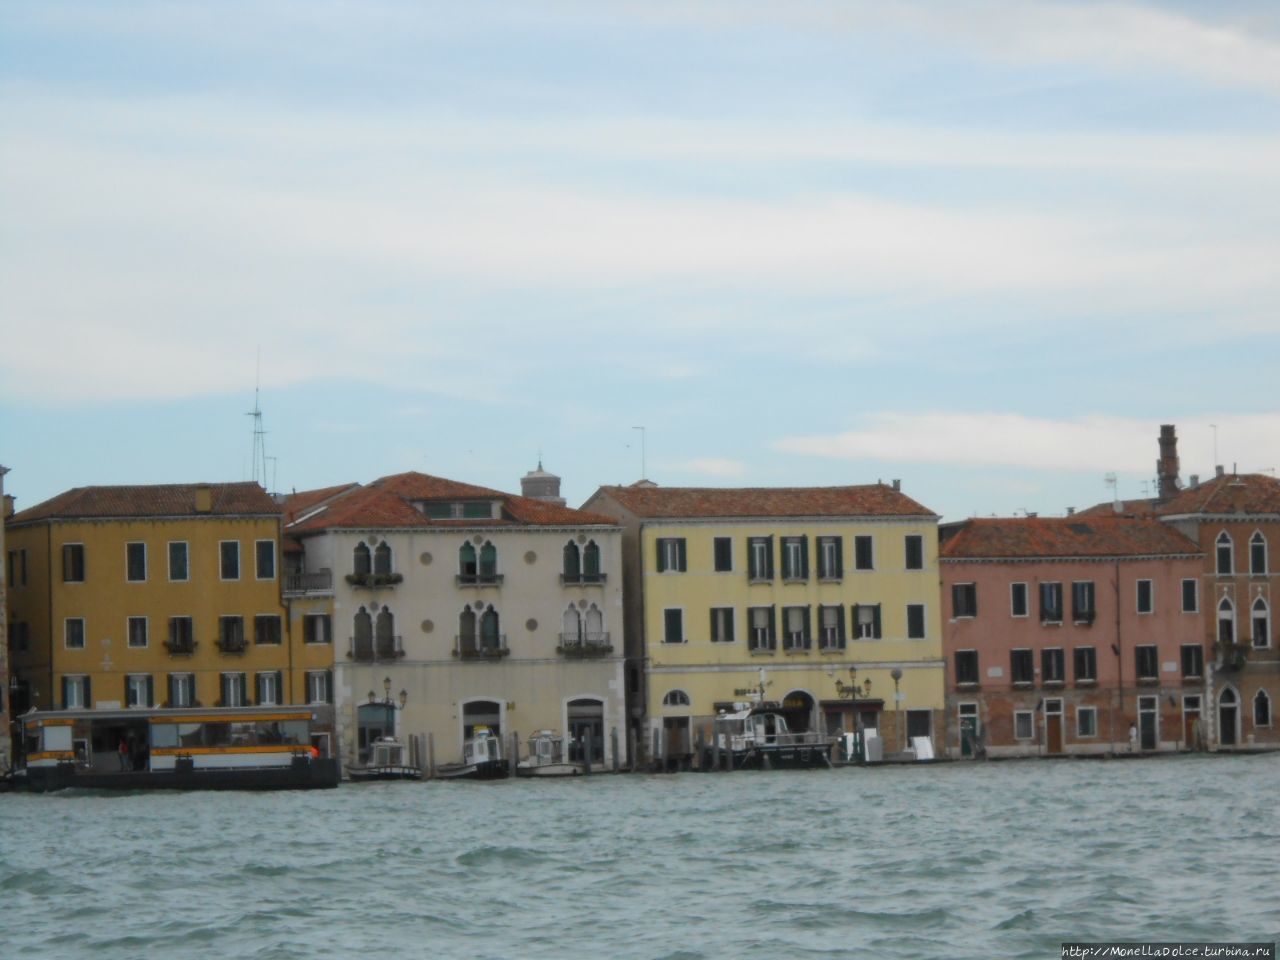 Venezia: на лайнере вдоль Венецианской лагуны Венеция, Италия